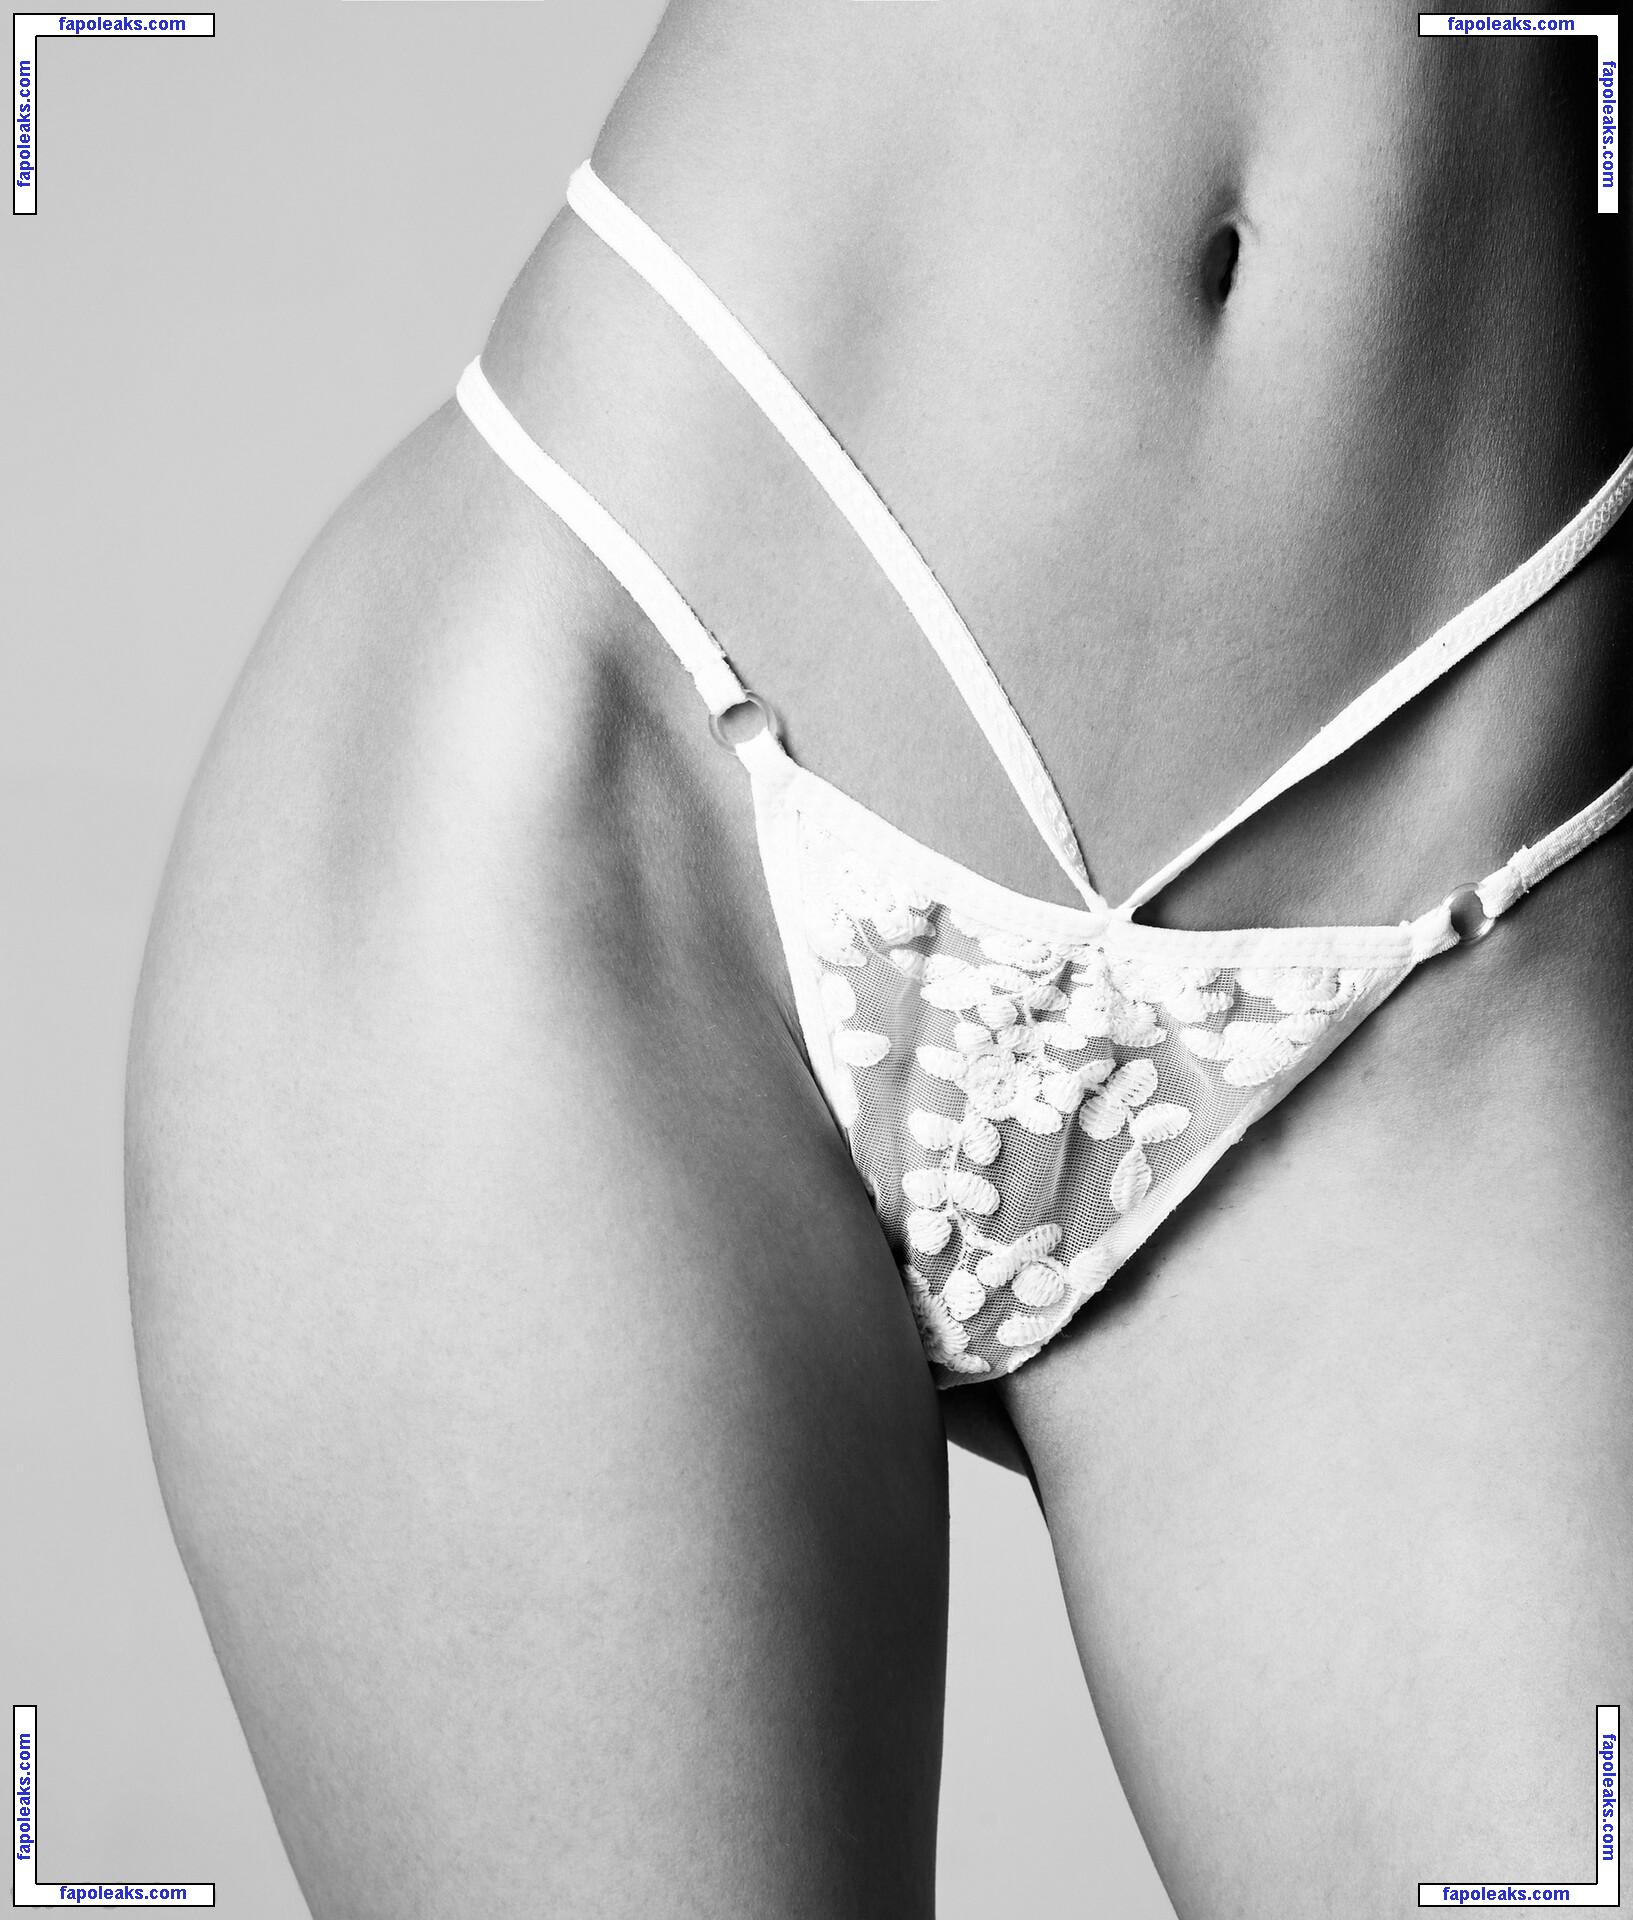 Nikol Beylik / Lily Hayjes / Wandaweb / nikolxxnikol / pronixyy nude photo #0553 from OnlyFans